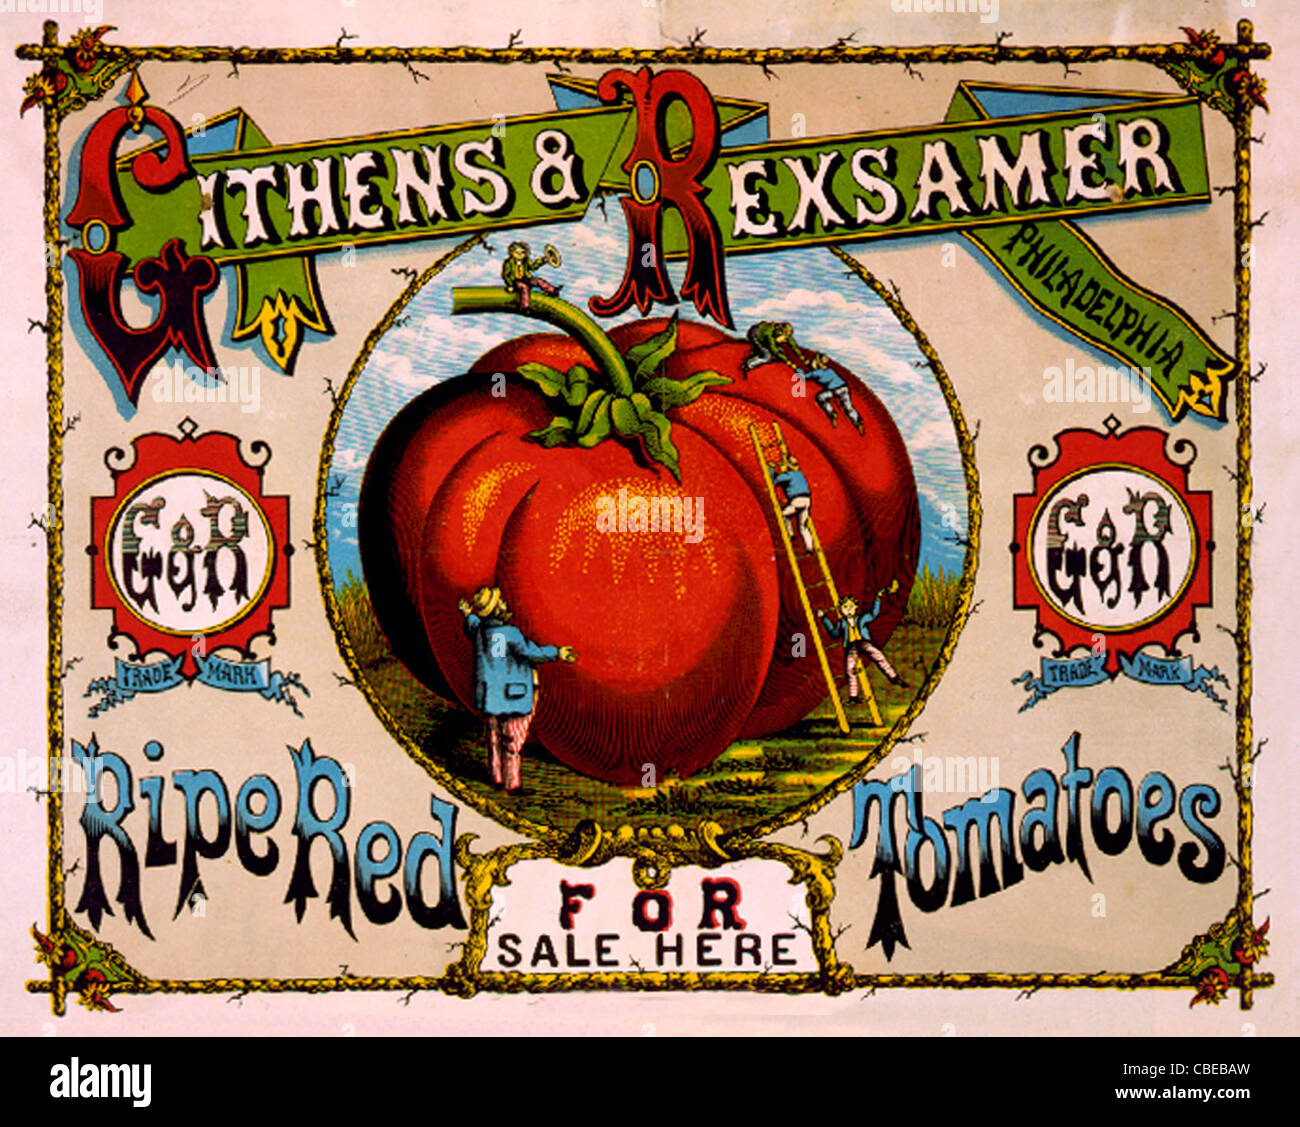 Reife rote Tomaten zum Verkauf hier Werbung für Githens & Rexsamer Tomaten zeigen Männer Klettern gigantische Tomaten. Stockfoto